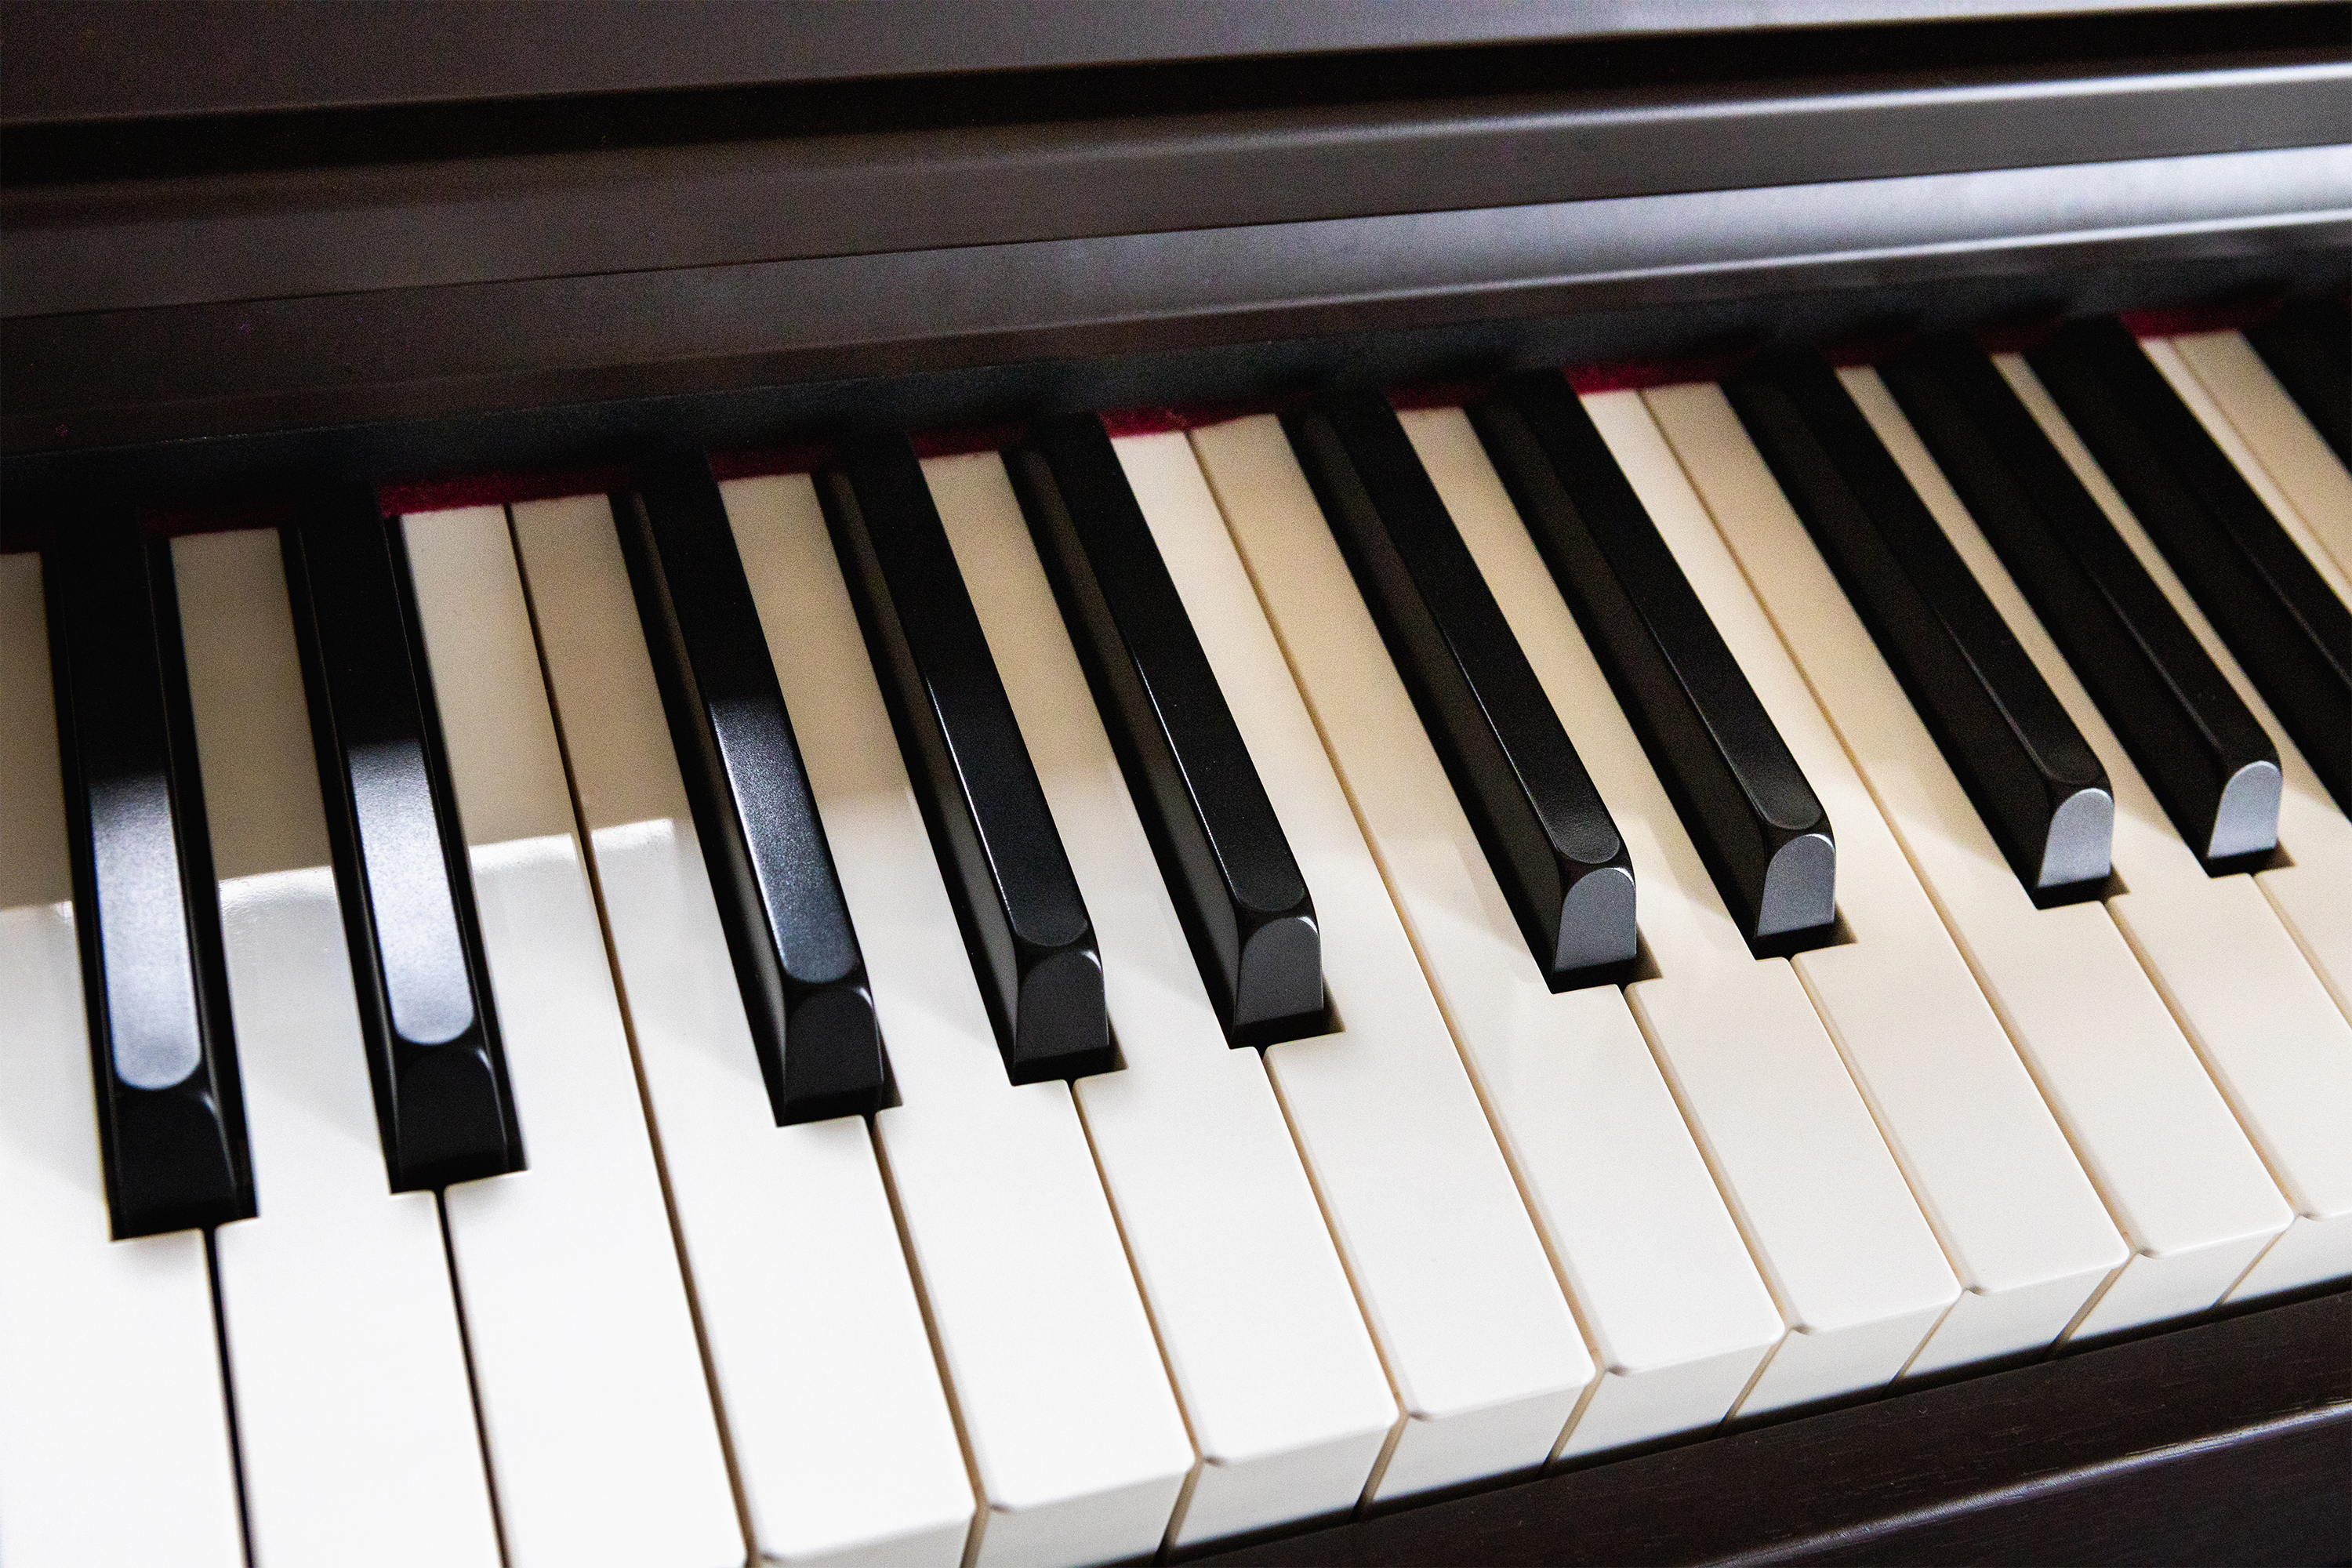 電子ピアノの鍵盤03 無料の高画質フリー写真素材 イメージズラボ